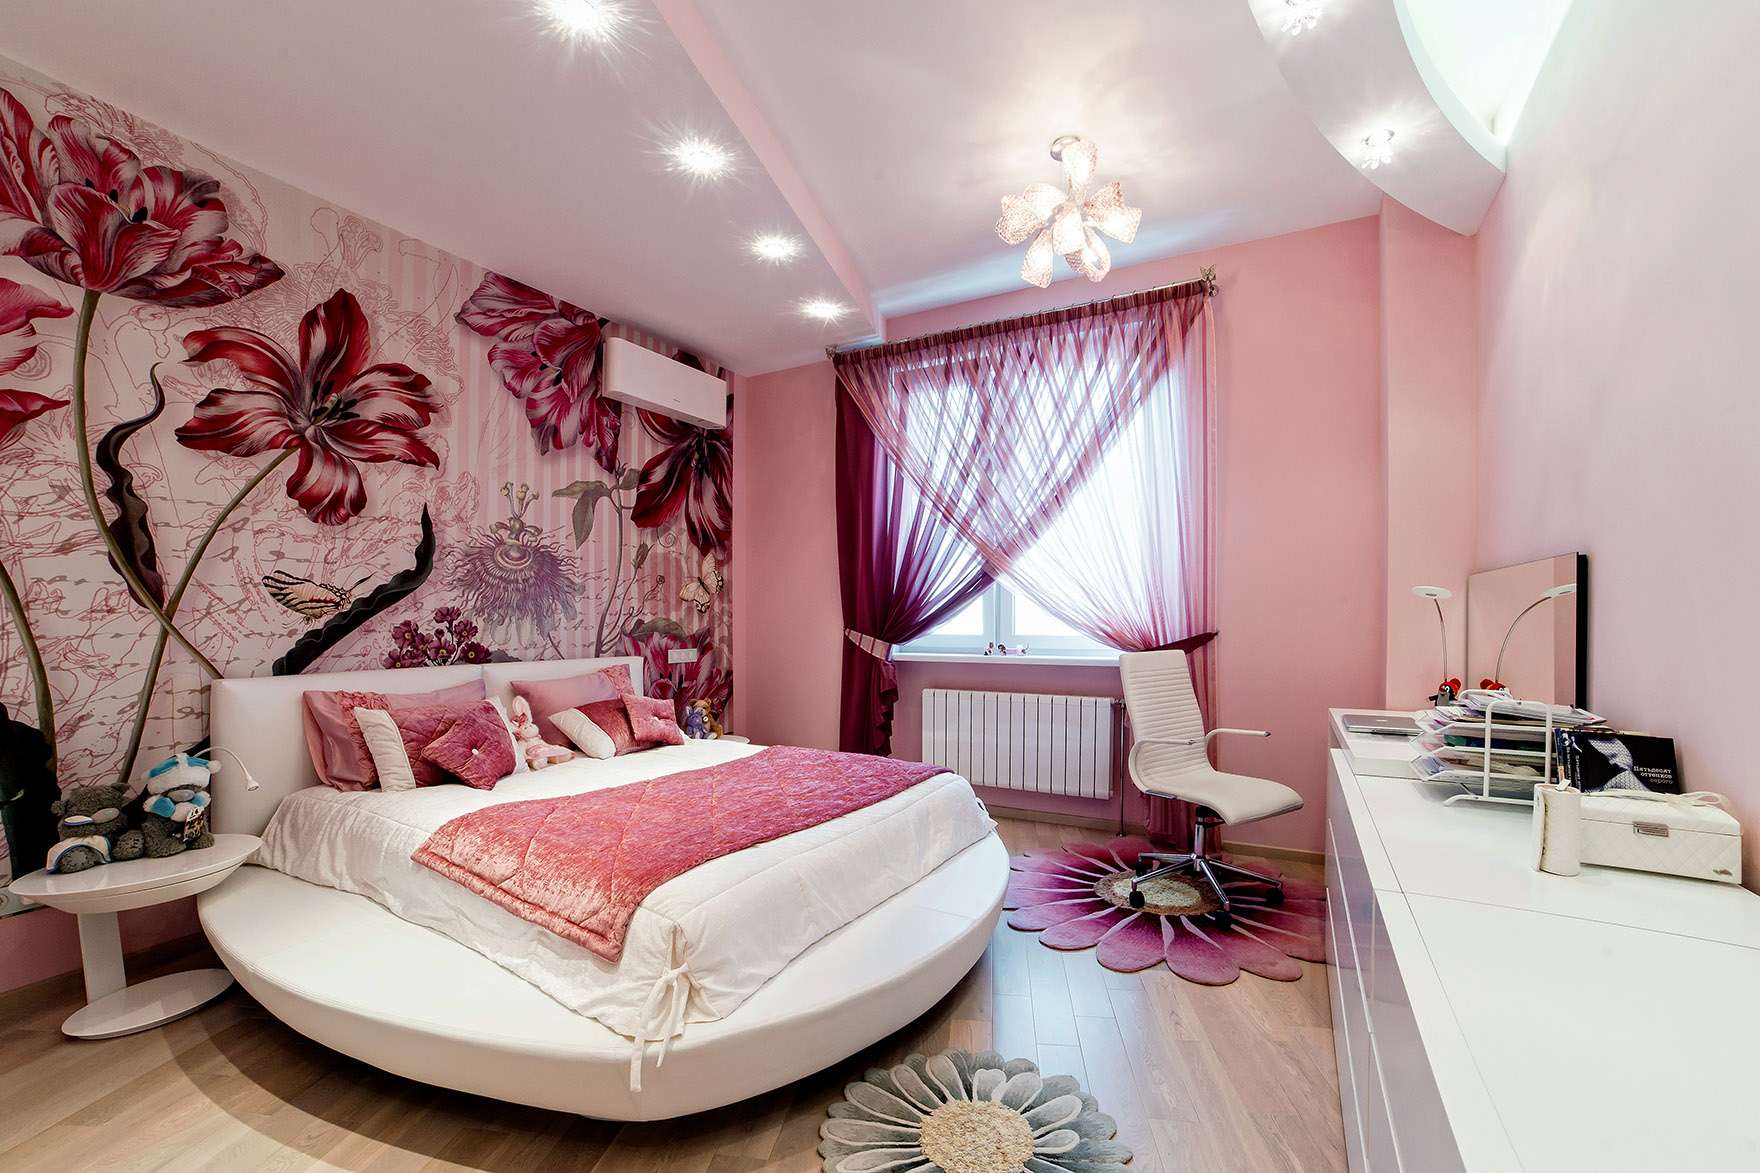 Спальня в розовых тонах. Спальня для девушки. Фотообои в интерьере спальни. Спальня в розовом цвете.